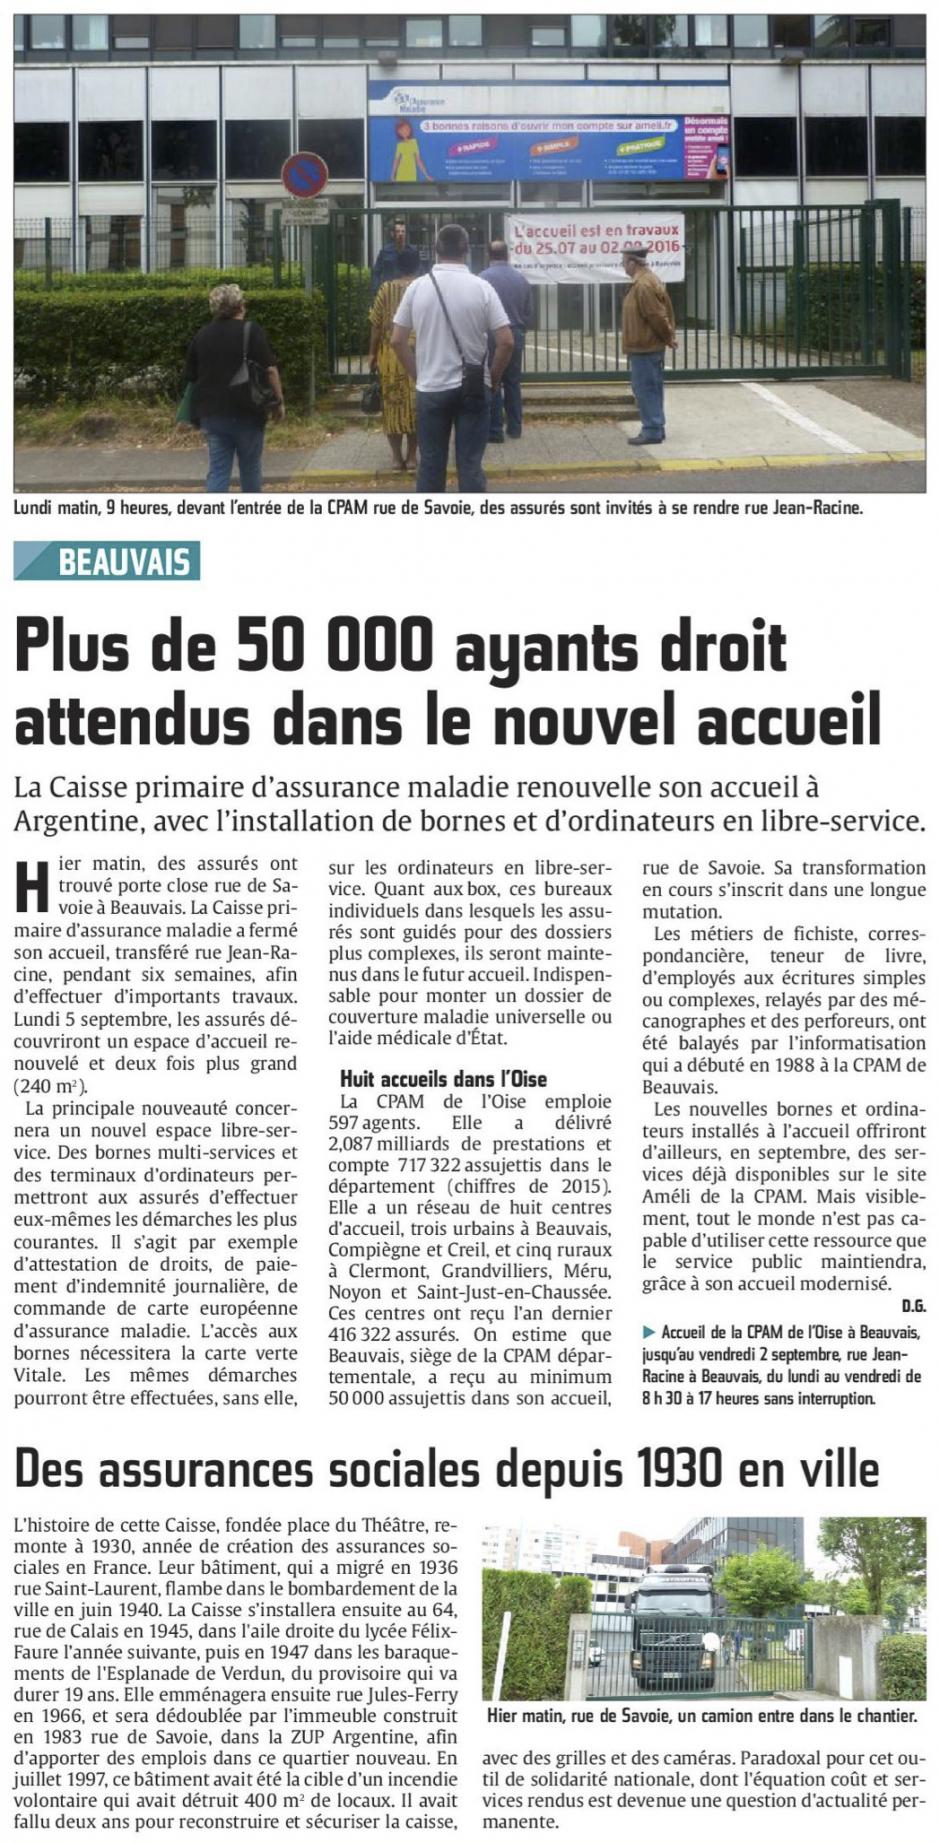 20160726-CP-Beauvais-Plus de 50 000 ayants droit attendus dans le nouvel accueil [CPAM]